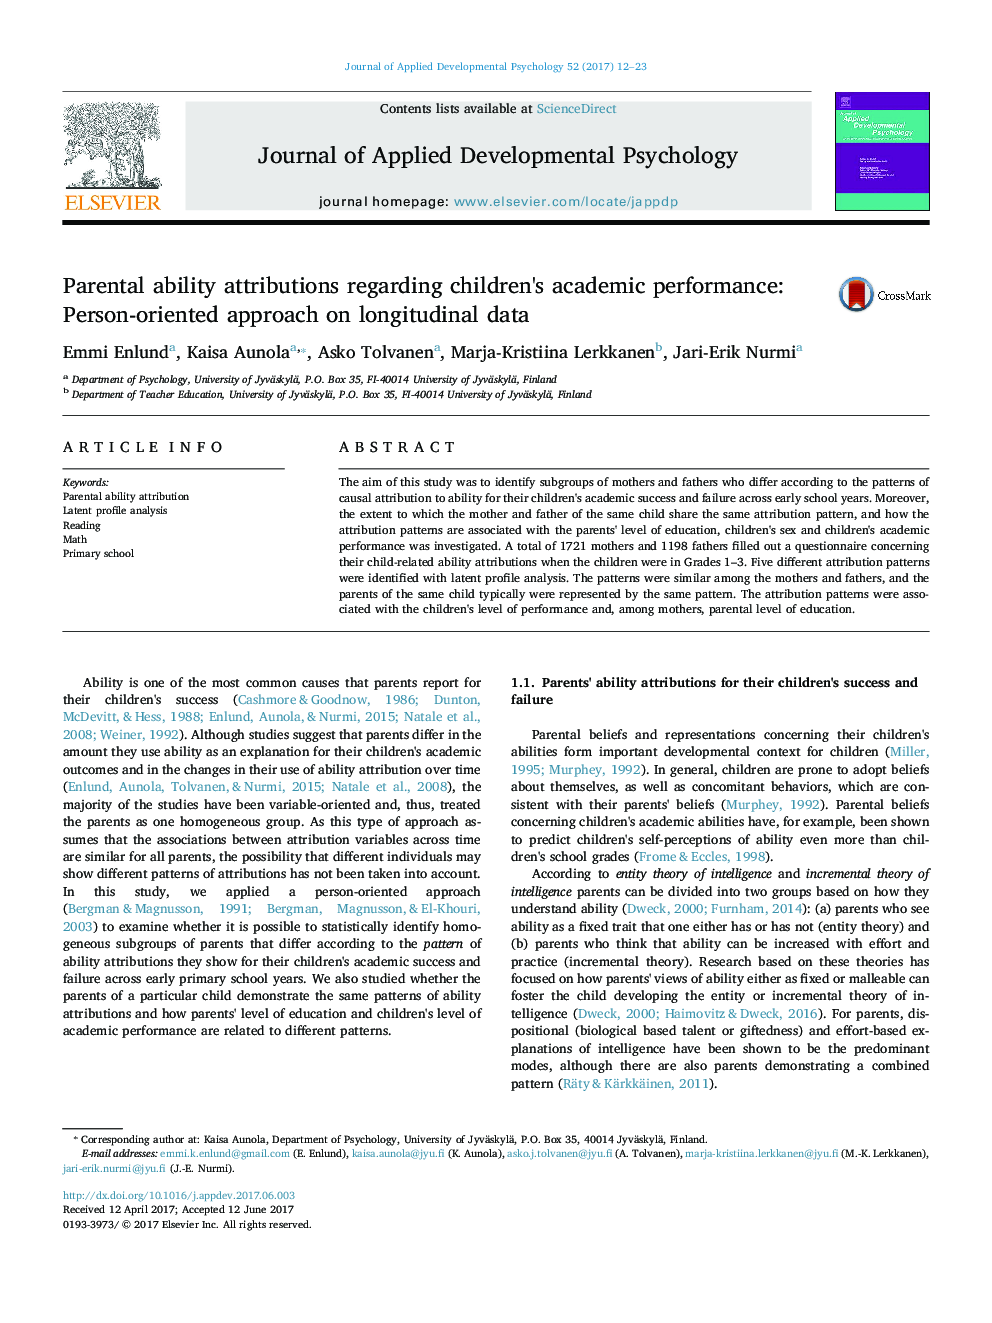 خصوصیات والدین نسبت به عملکرد تحصیلی کودکان: رویکرد شخصیتی بر داده های طولی 